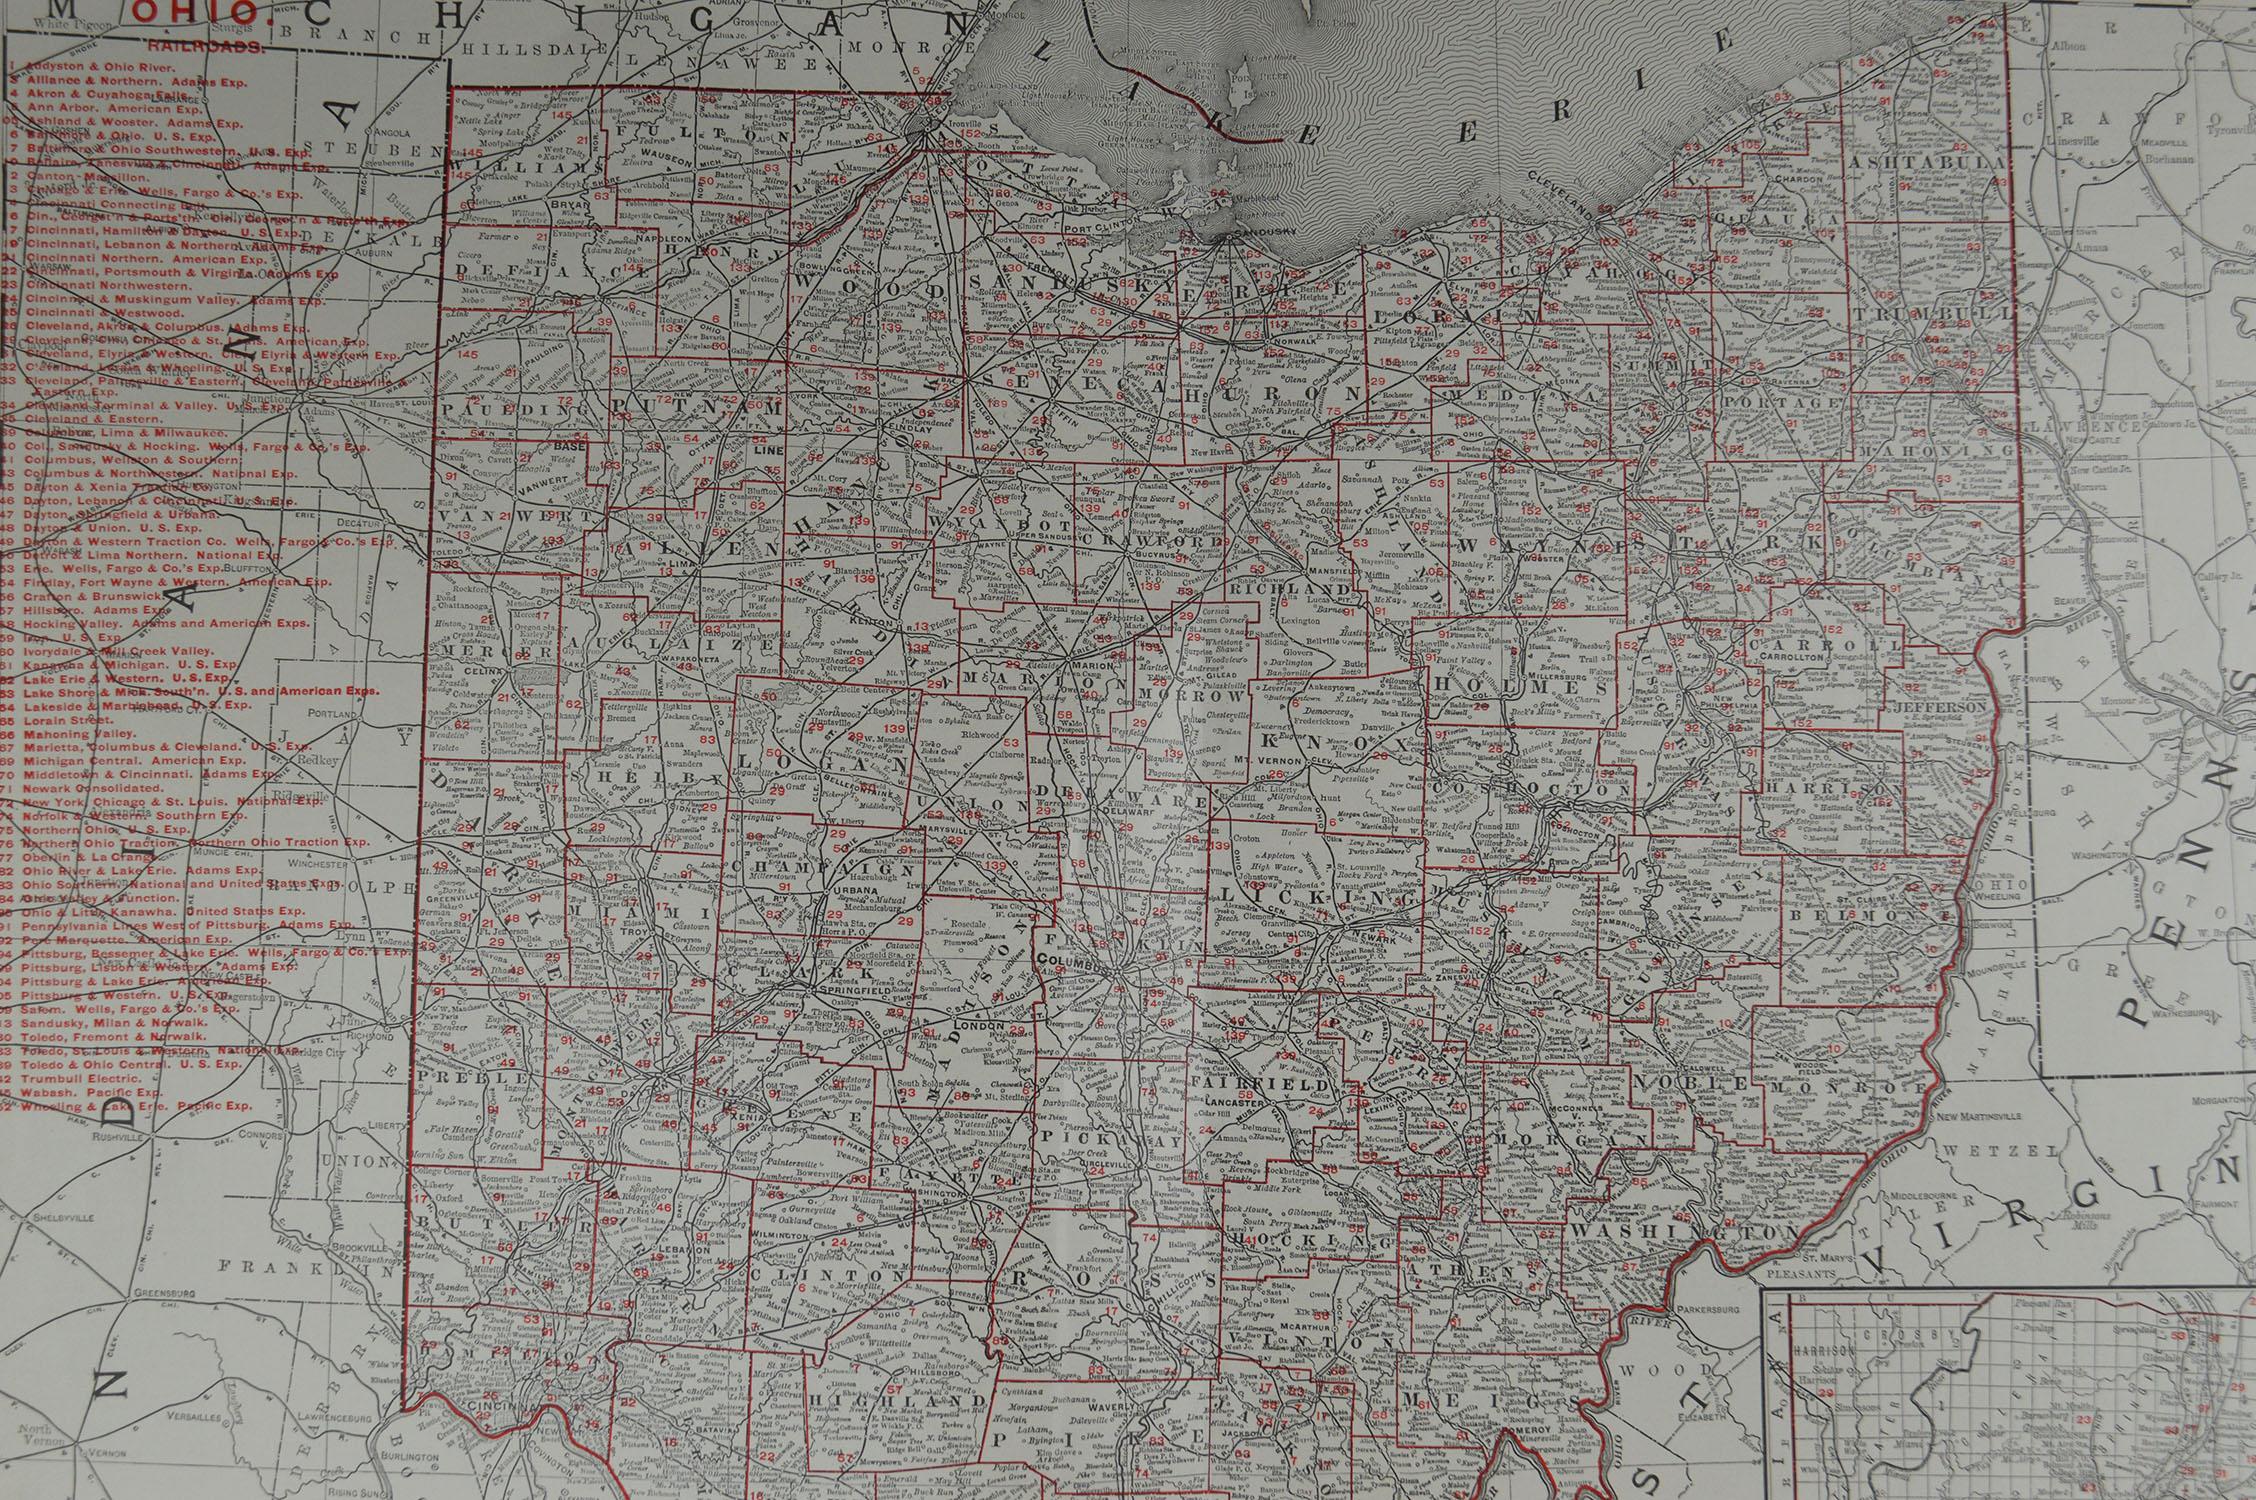 large map of ohio